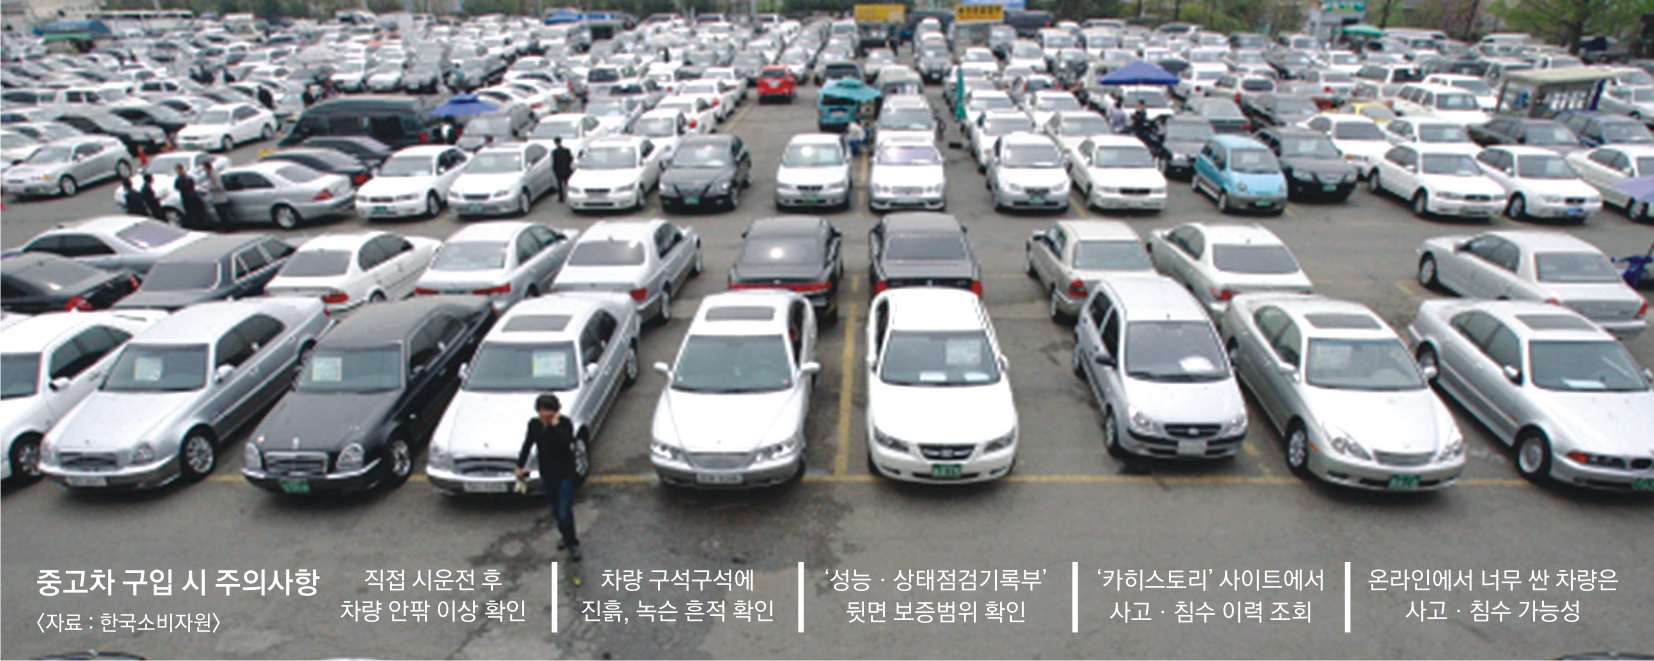 소비자분쟁 해결 기준에 따르면 사고·침수 이력이 있거나 주행거리를 조작한 중고차는 환불이나 손해배상을 받을 수 있다. 서울신문 DB